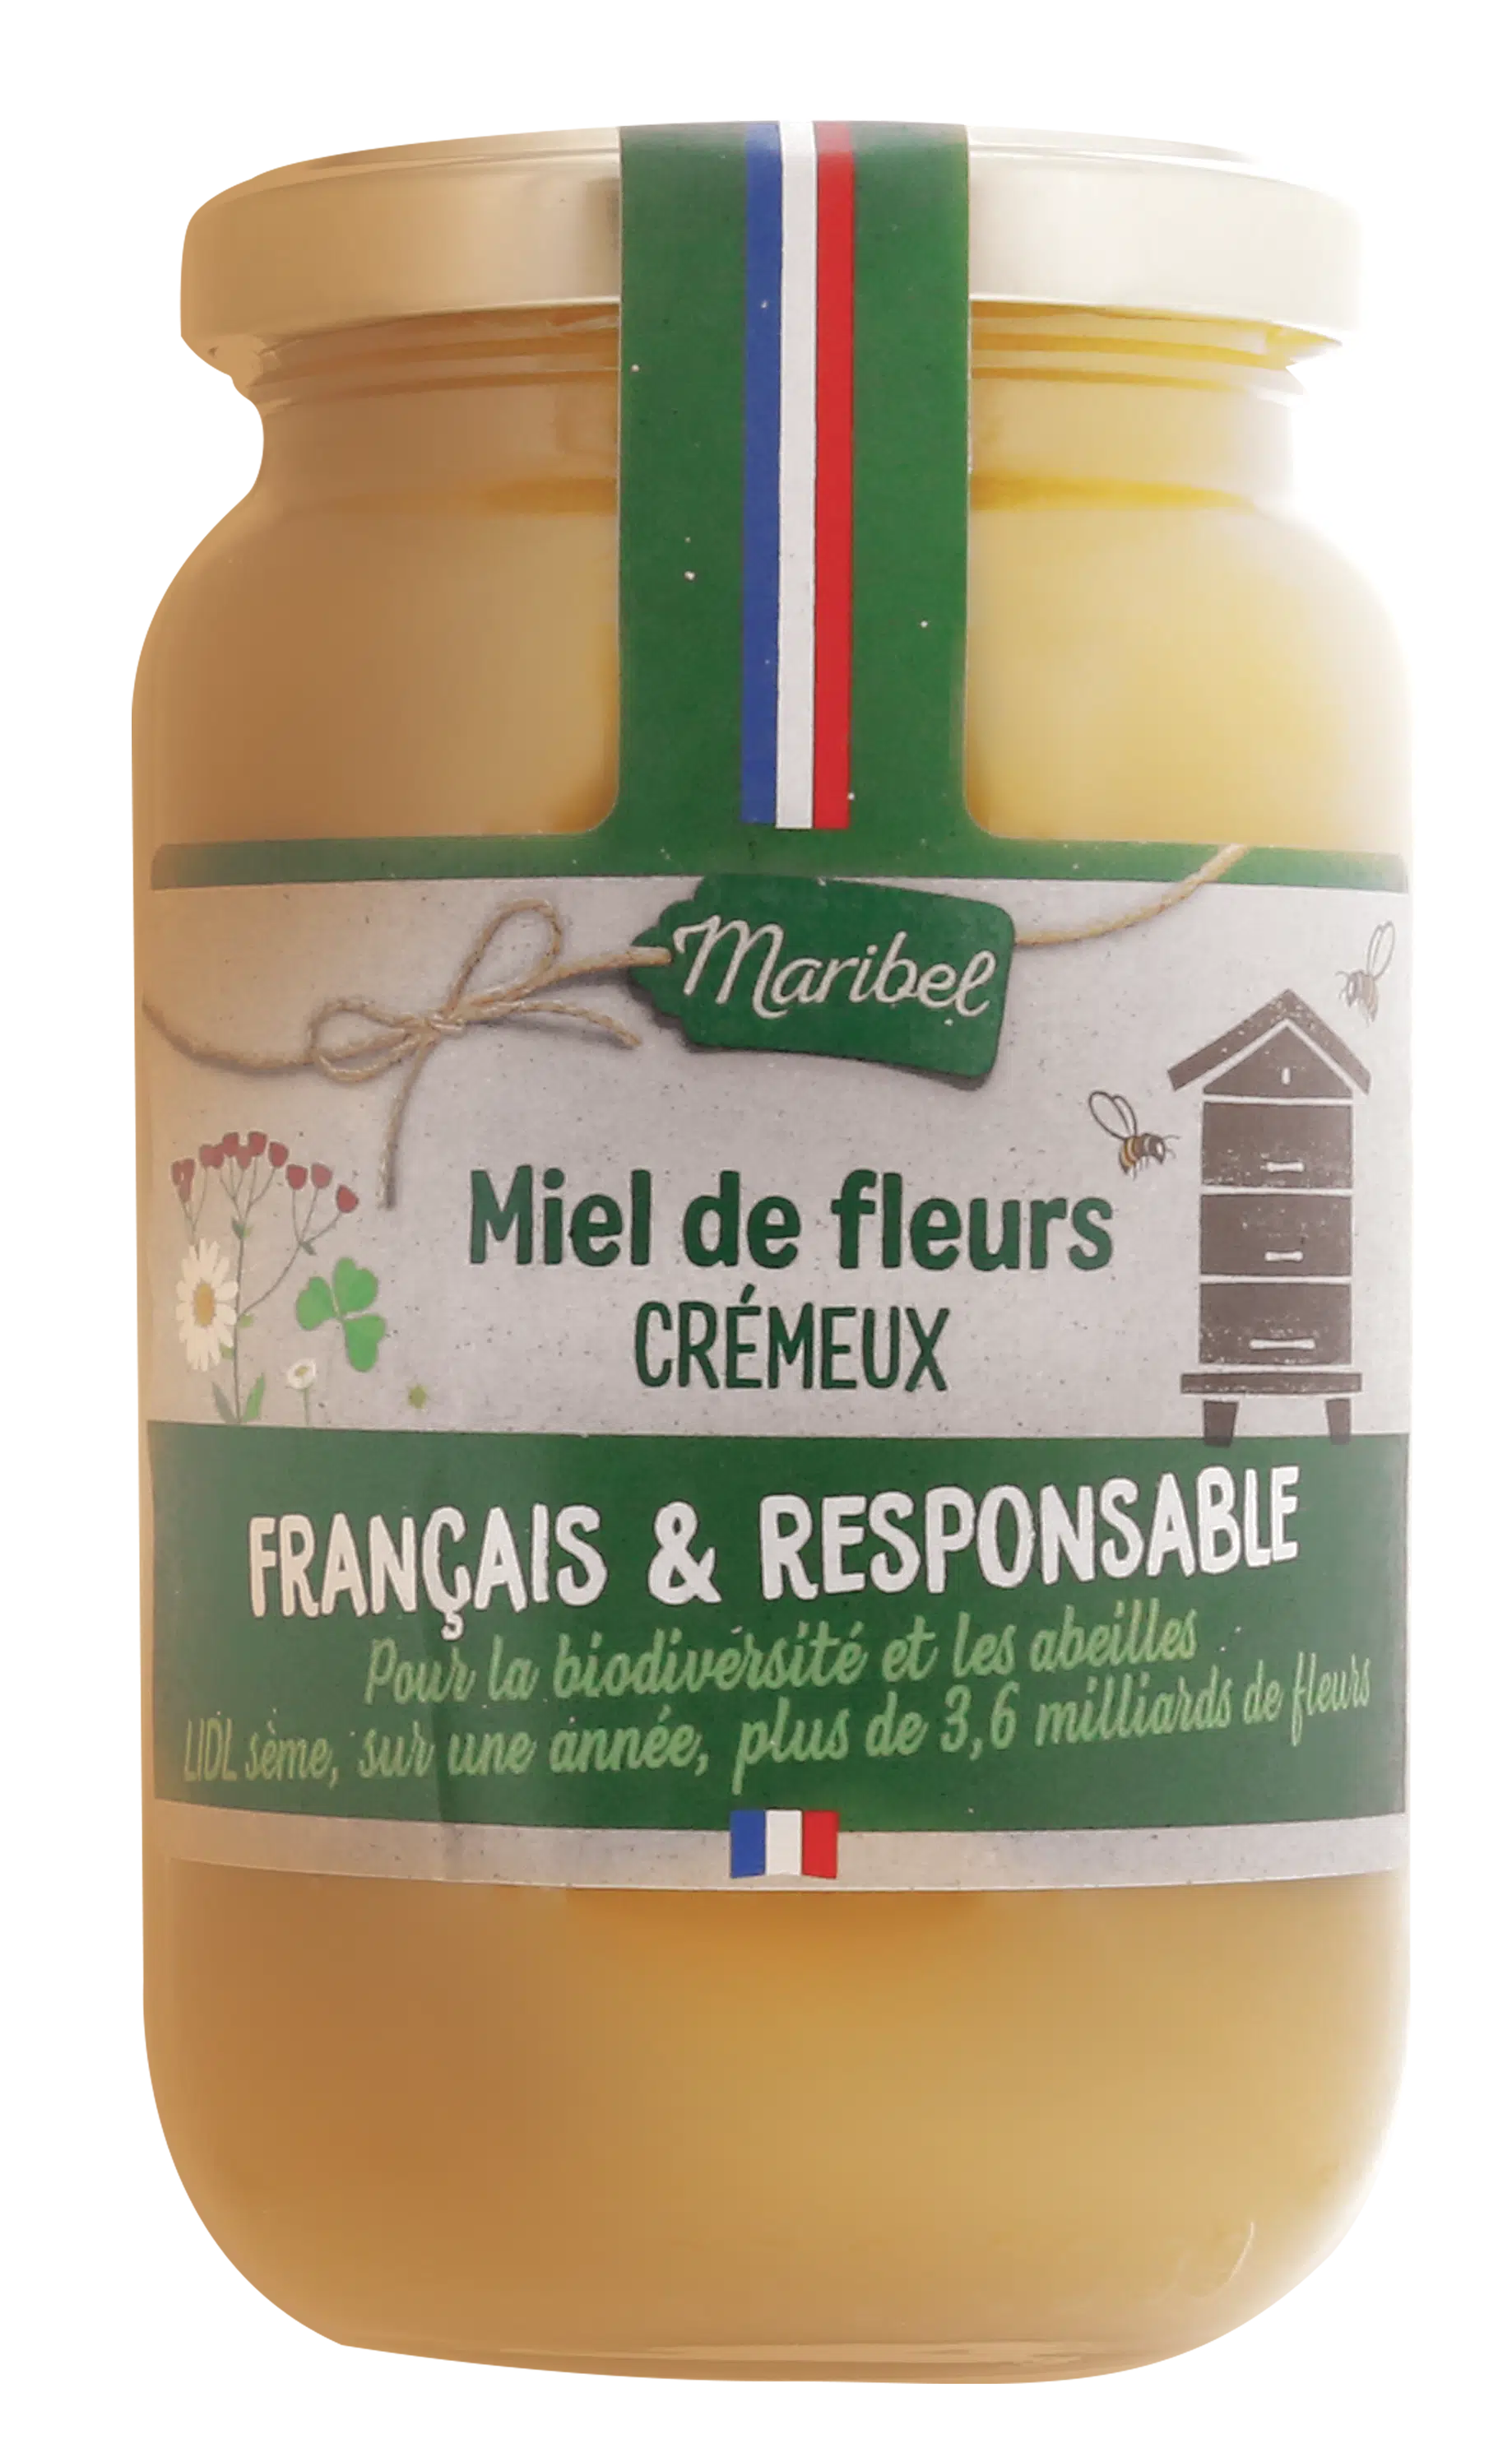 Miel crémeux français & responsable - Maribel - 500 g